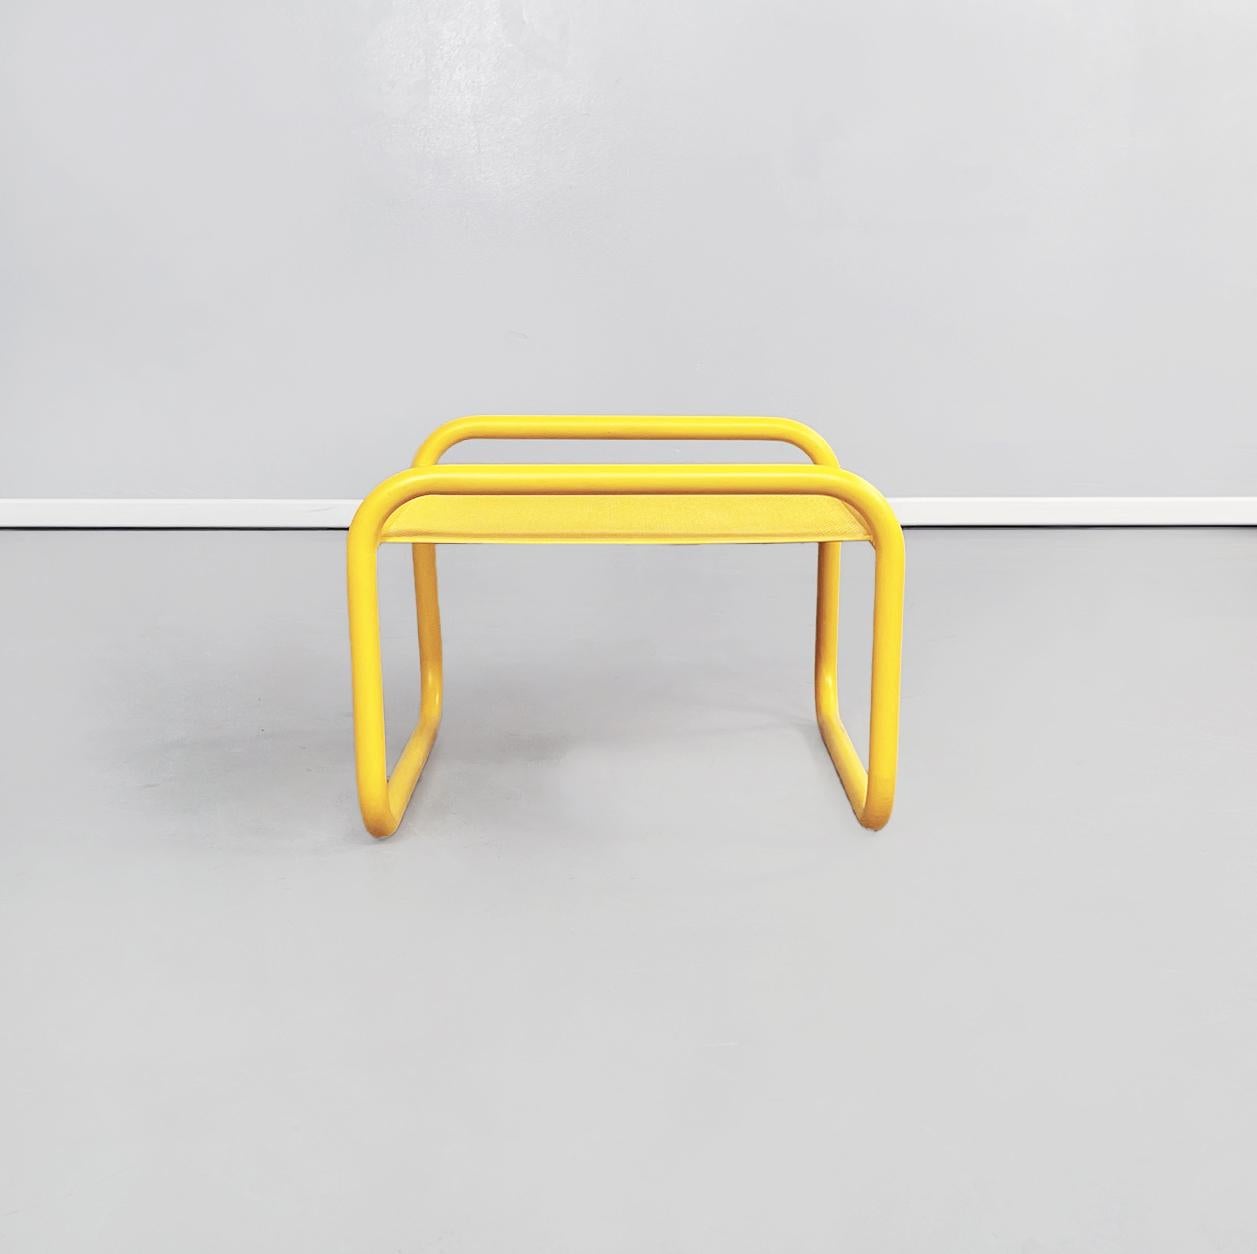 Italienischer gelber Fußschemel Locus Solus von Gae Aulenti für Poltronova, 1960er Jahre
Fußstütze aus der Serie Locus Solus aus gelb lackiertem Metall. Der rechteckige Deckel ist perforiert. Die Struktur ist röhrenförmig. Er ist für den Einsatz im